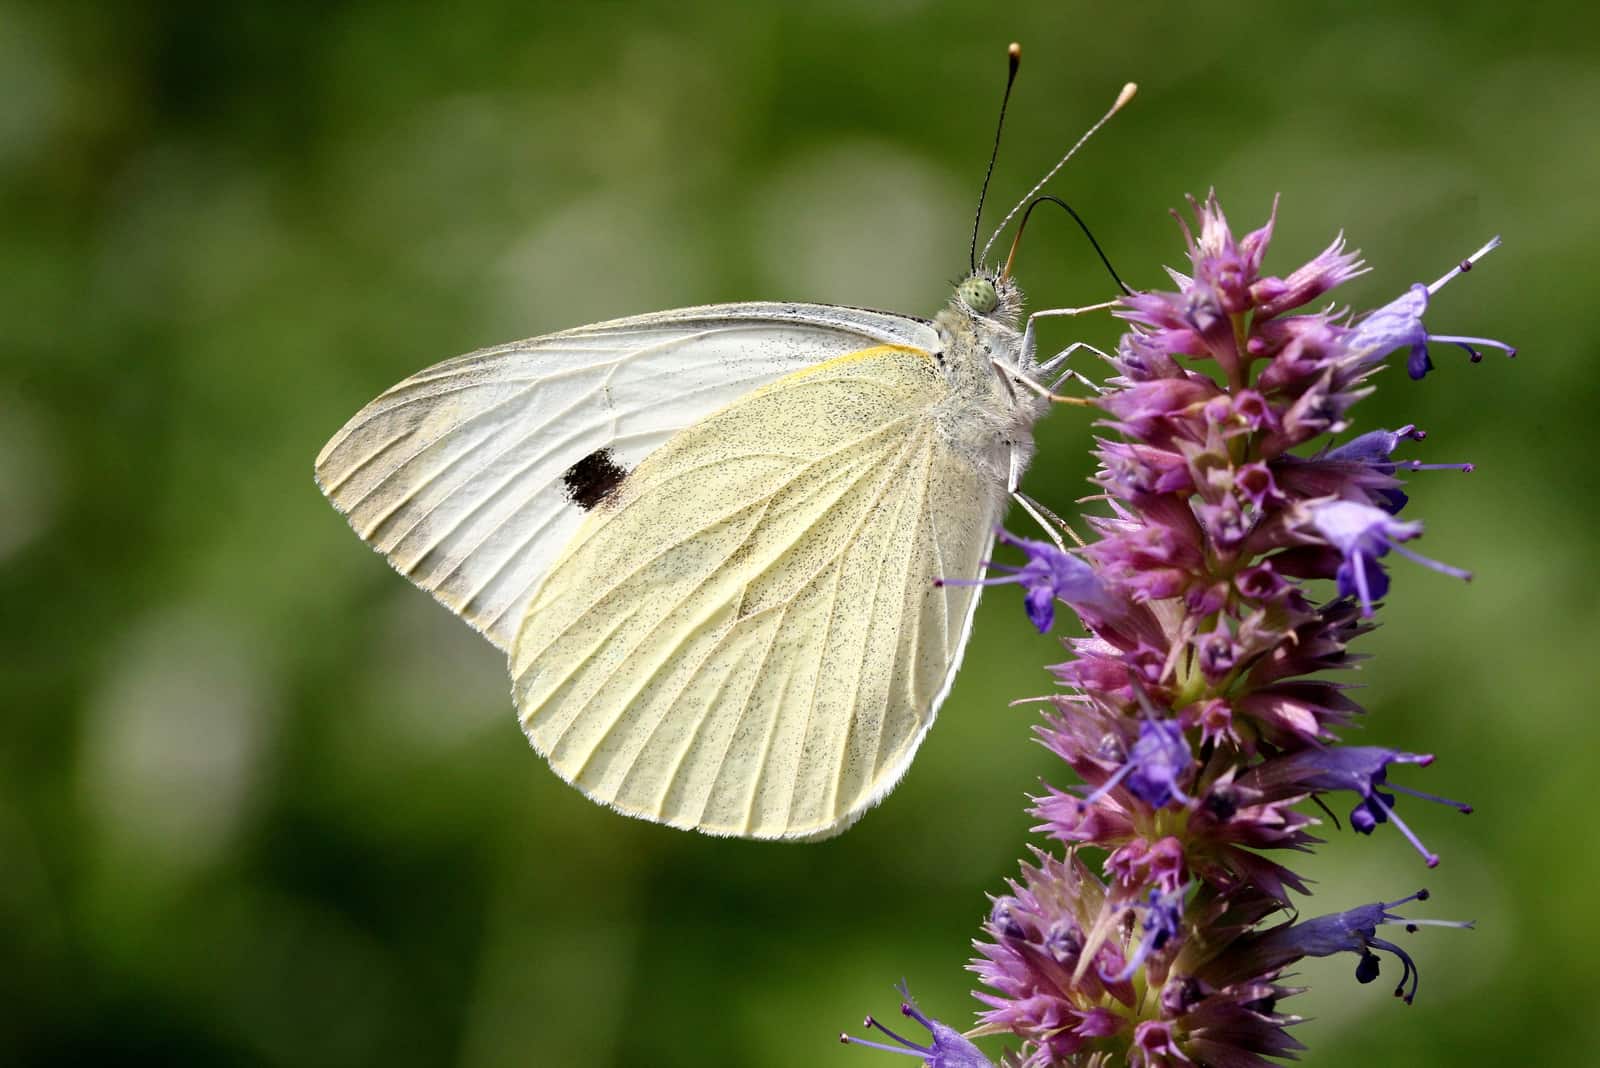 Weißer Schmetterling samt Bedeutung: Begib dich auf eine spirituelle Reise!